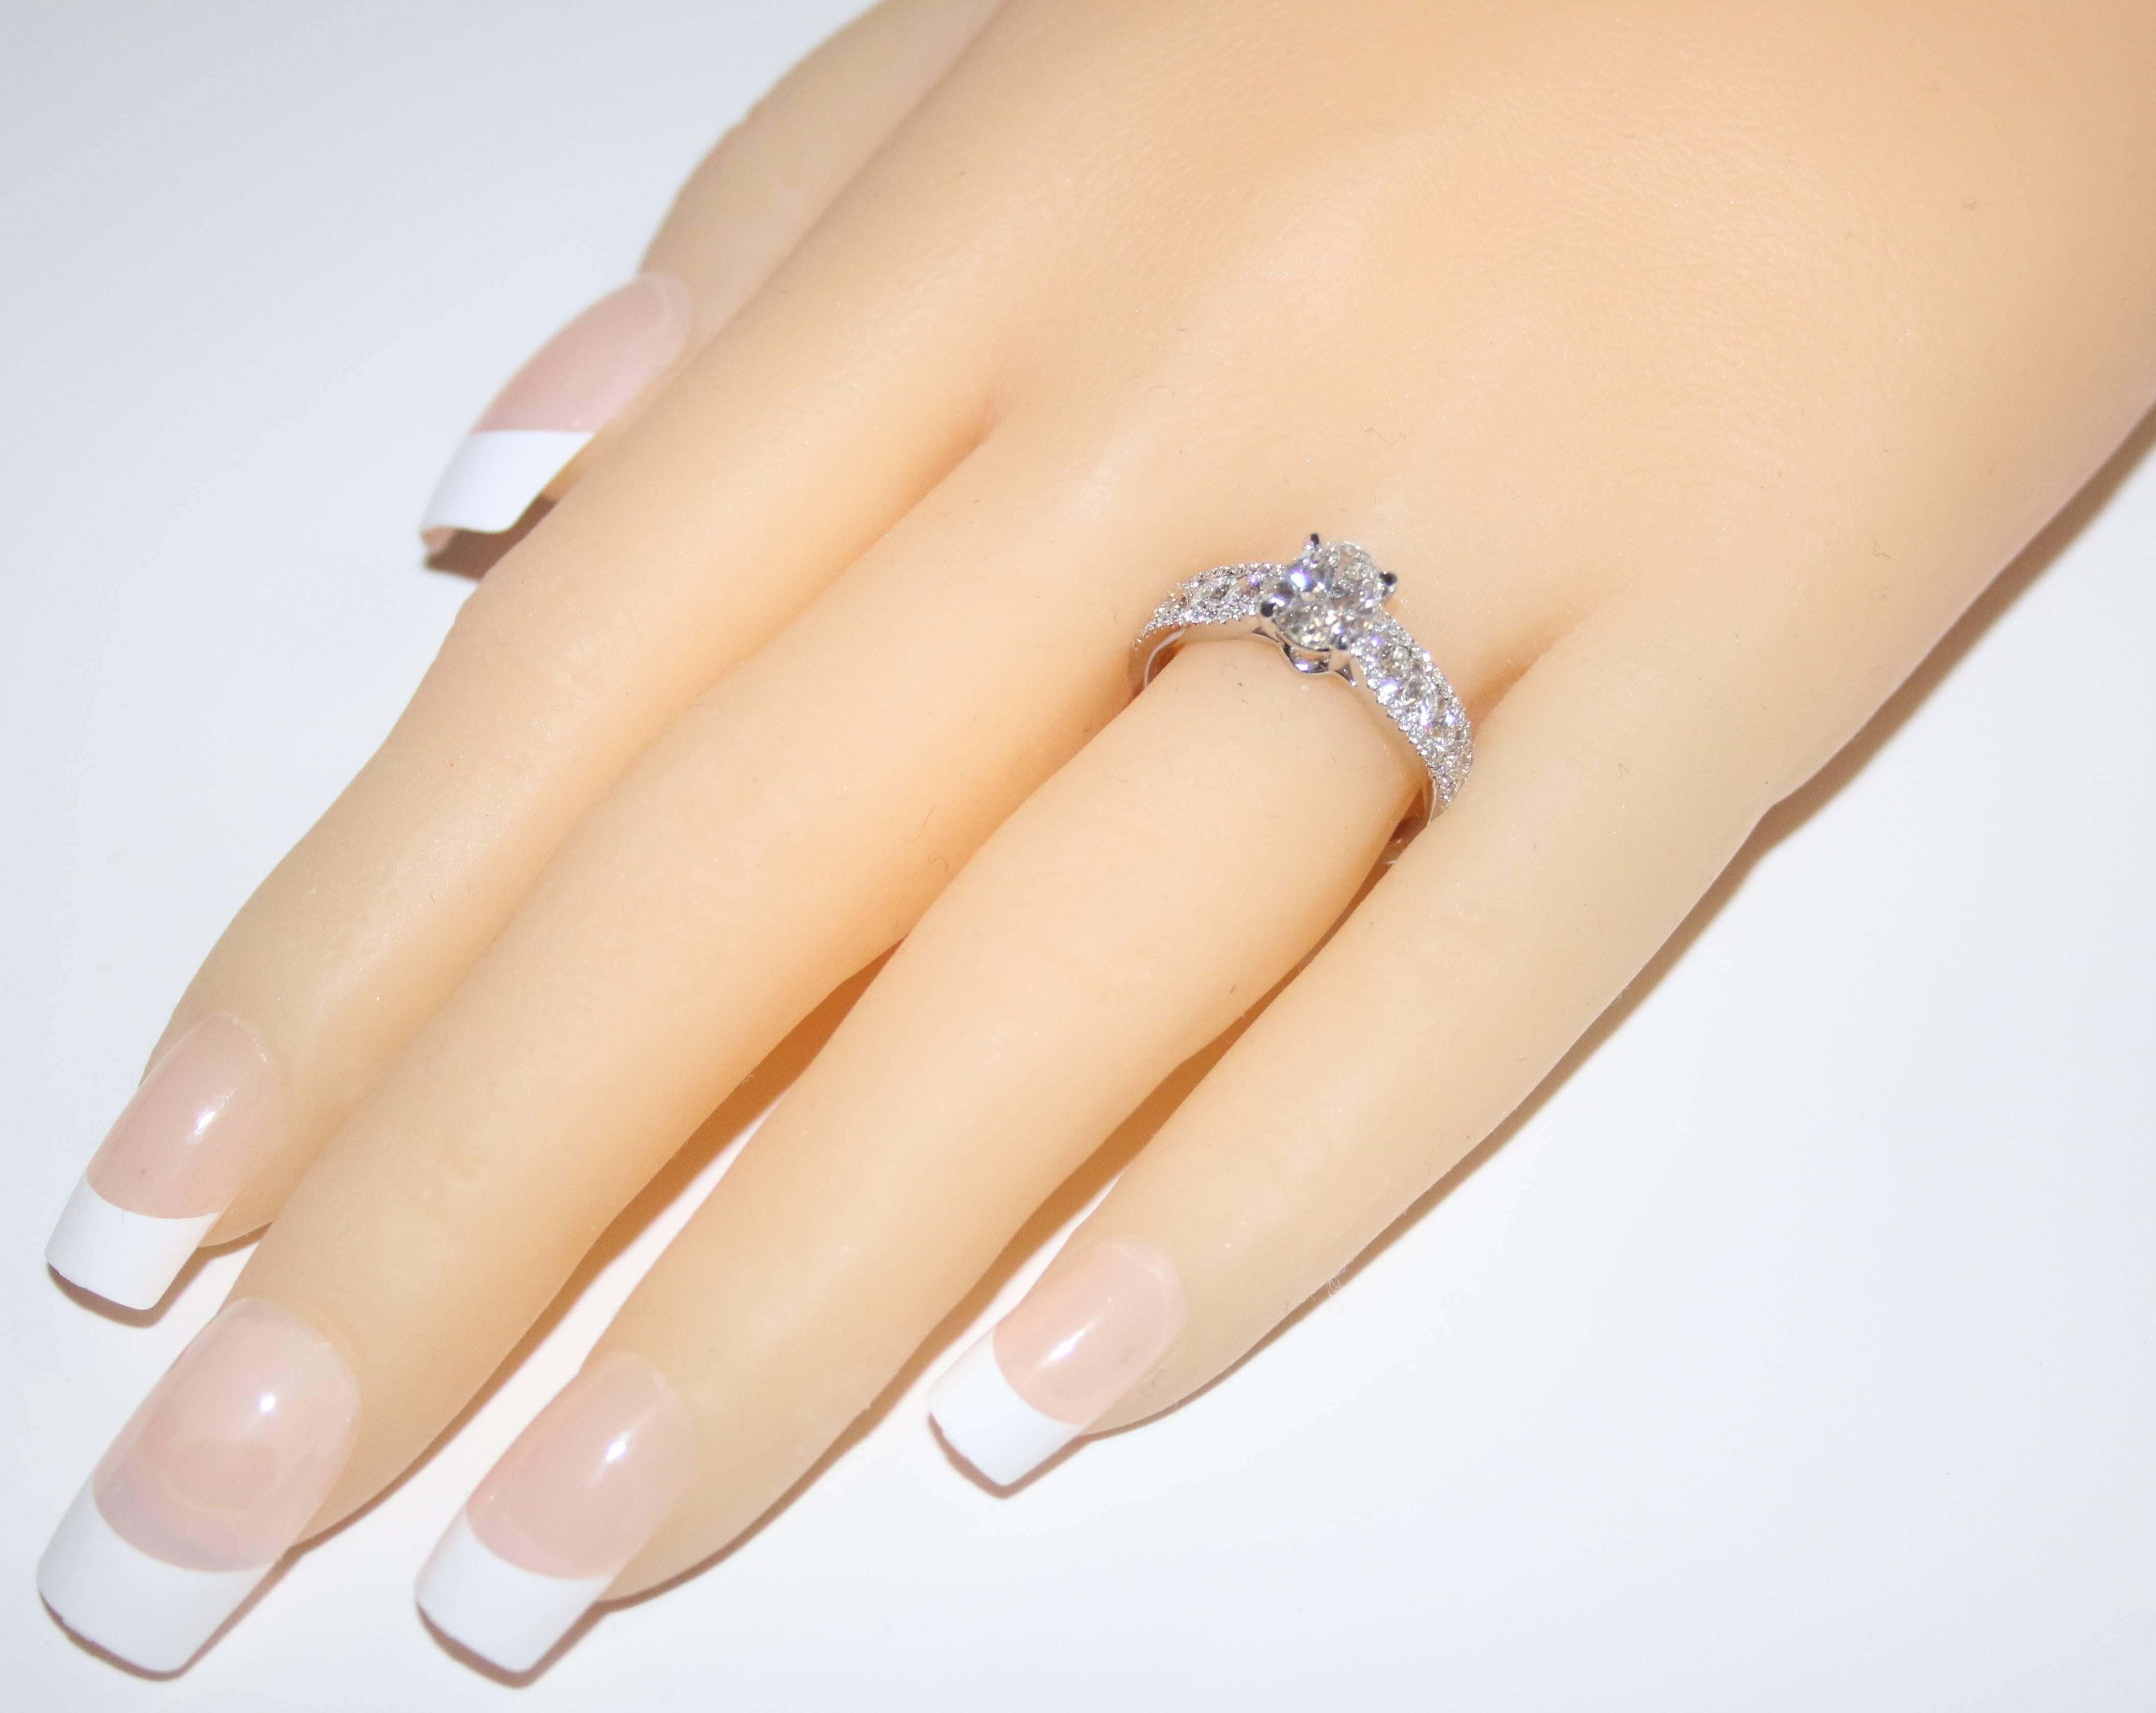 4.5 carat oval diamond ring